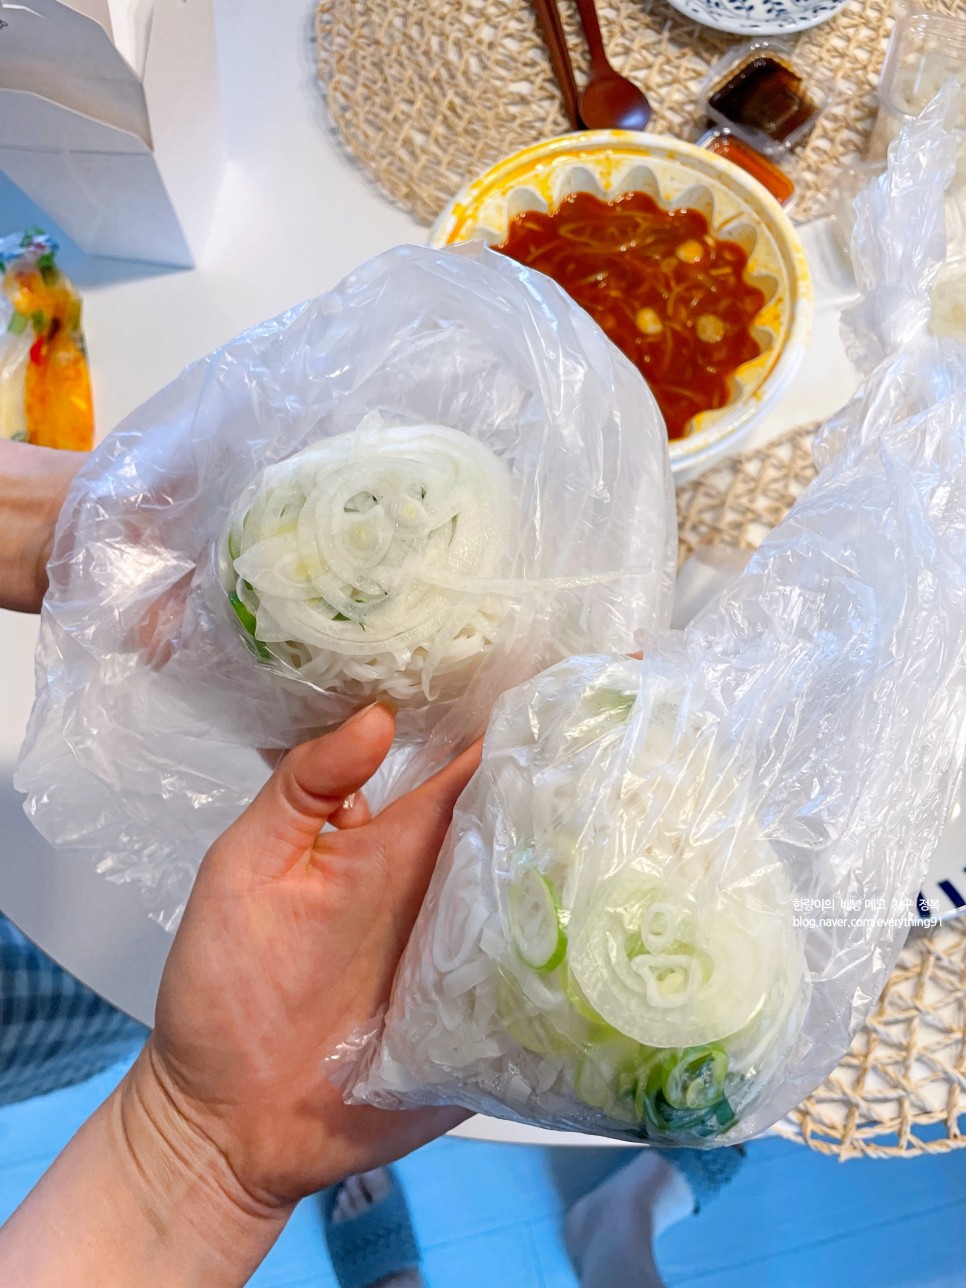 수지 배달 맛집 양양 차도르 쌀국수 - 동네 생활